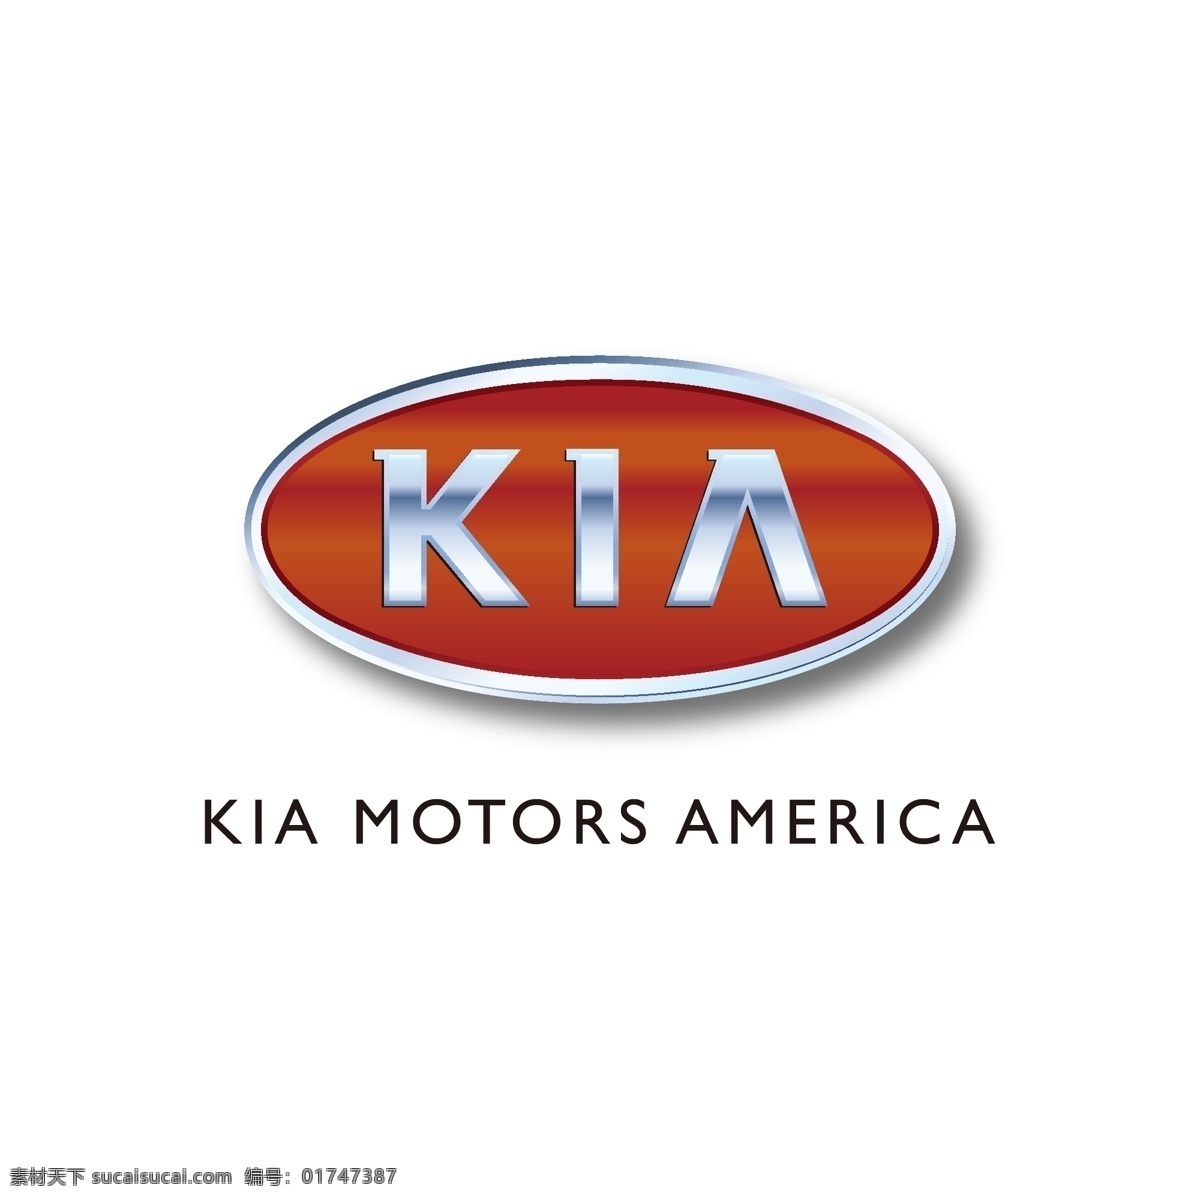 kia 起亚 logo 矢量 汽车 车 车标 图形 标准 电动车 行驶 驾驶 驾驶人 开车 代驾 logo集合 标志图标 企业 标志